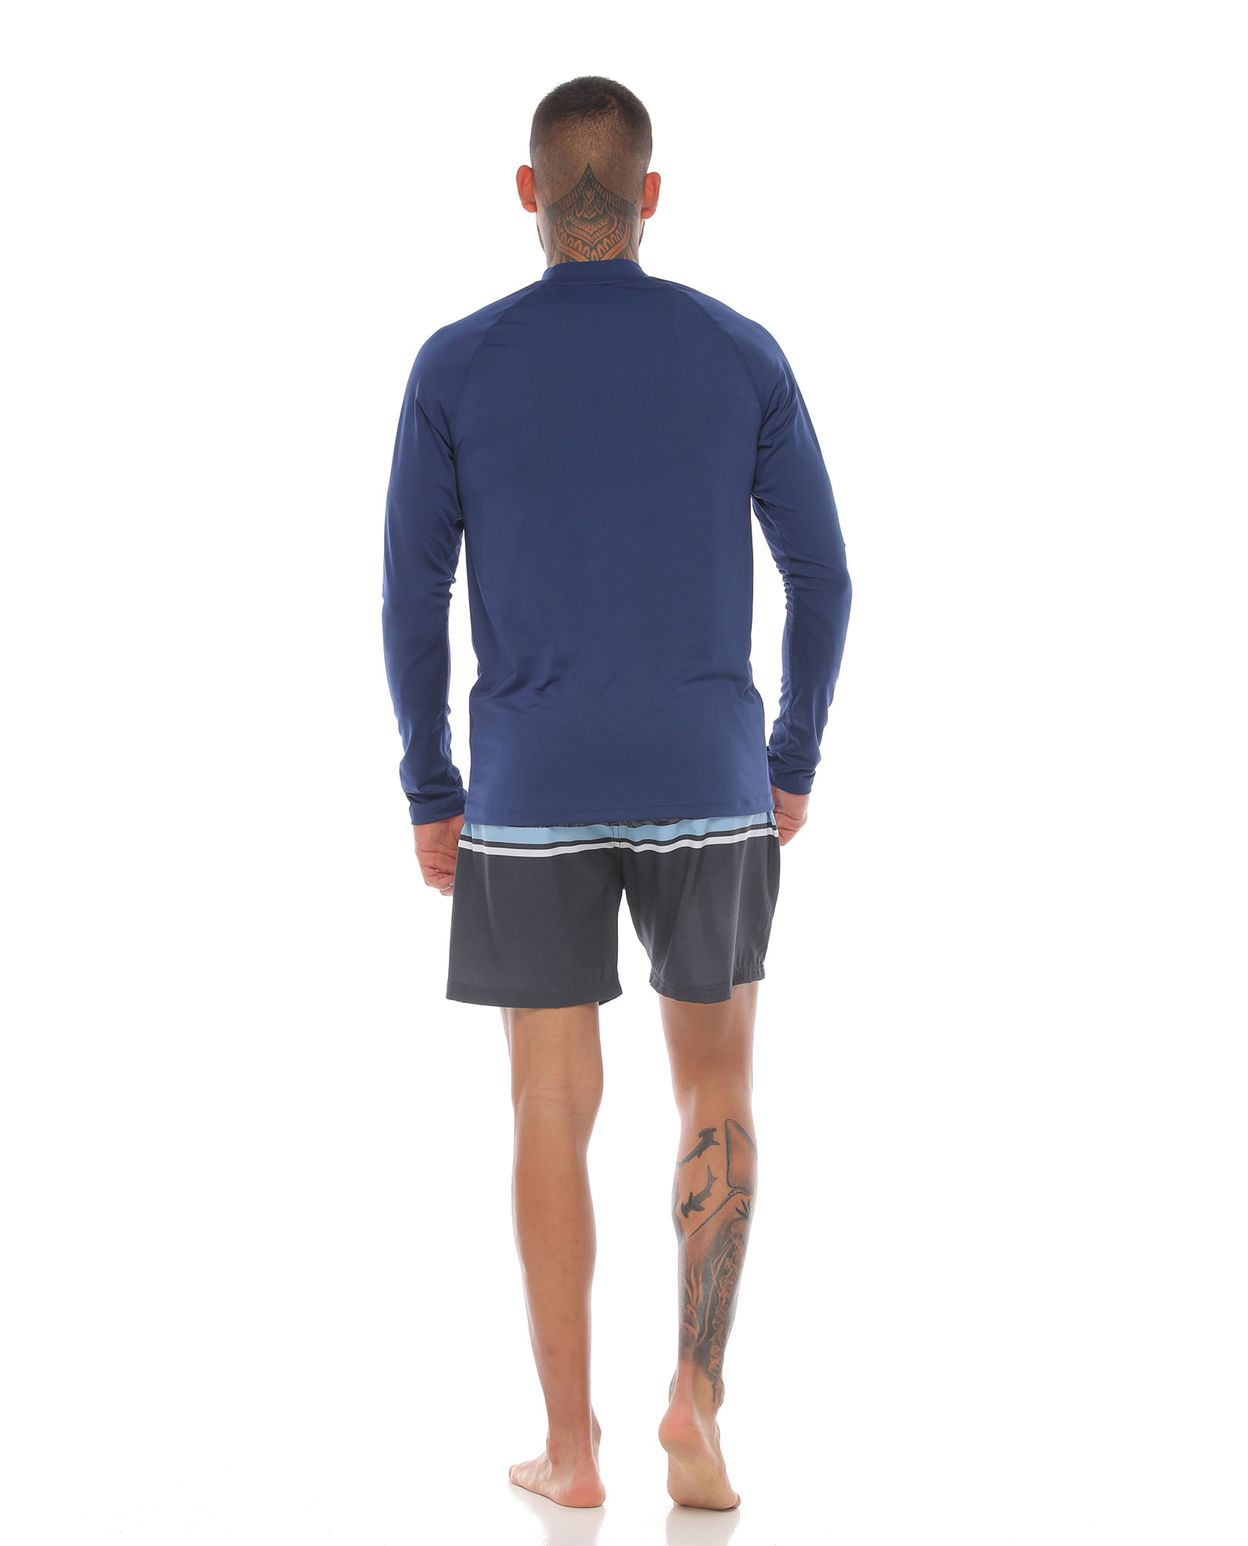 modelo con camibuso proteccion uv color azul oscuro y pantaloneta de playa color gris para hombre cuerpo completo parte trasera